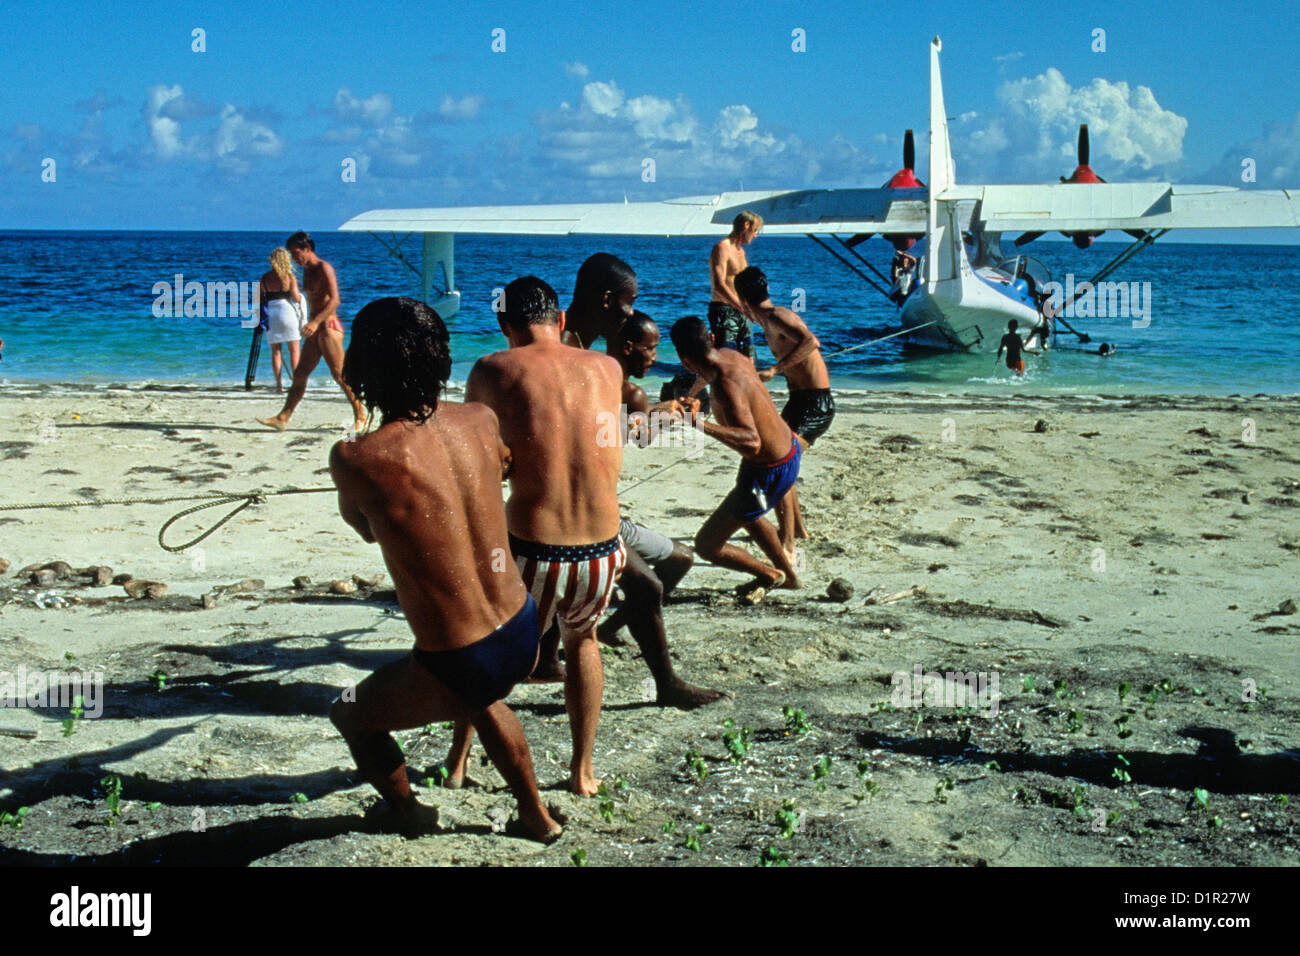 Brésil, Salvador de Bahia, Catalina PBY-5A tiré de l'aquaplanage sur la plage après l'atterrissage. Banque D'Images